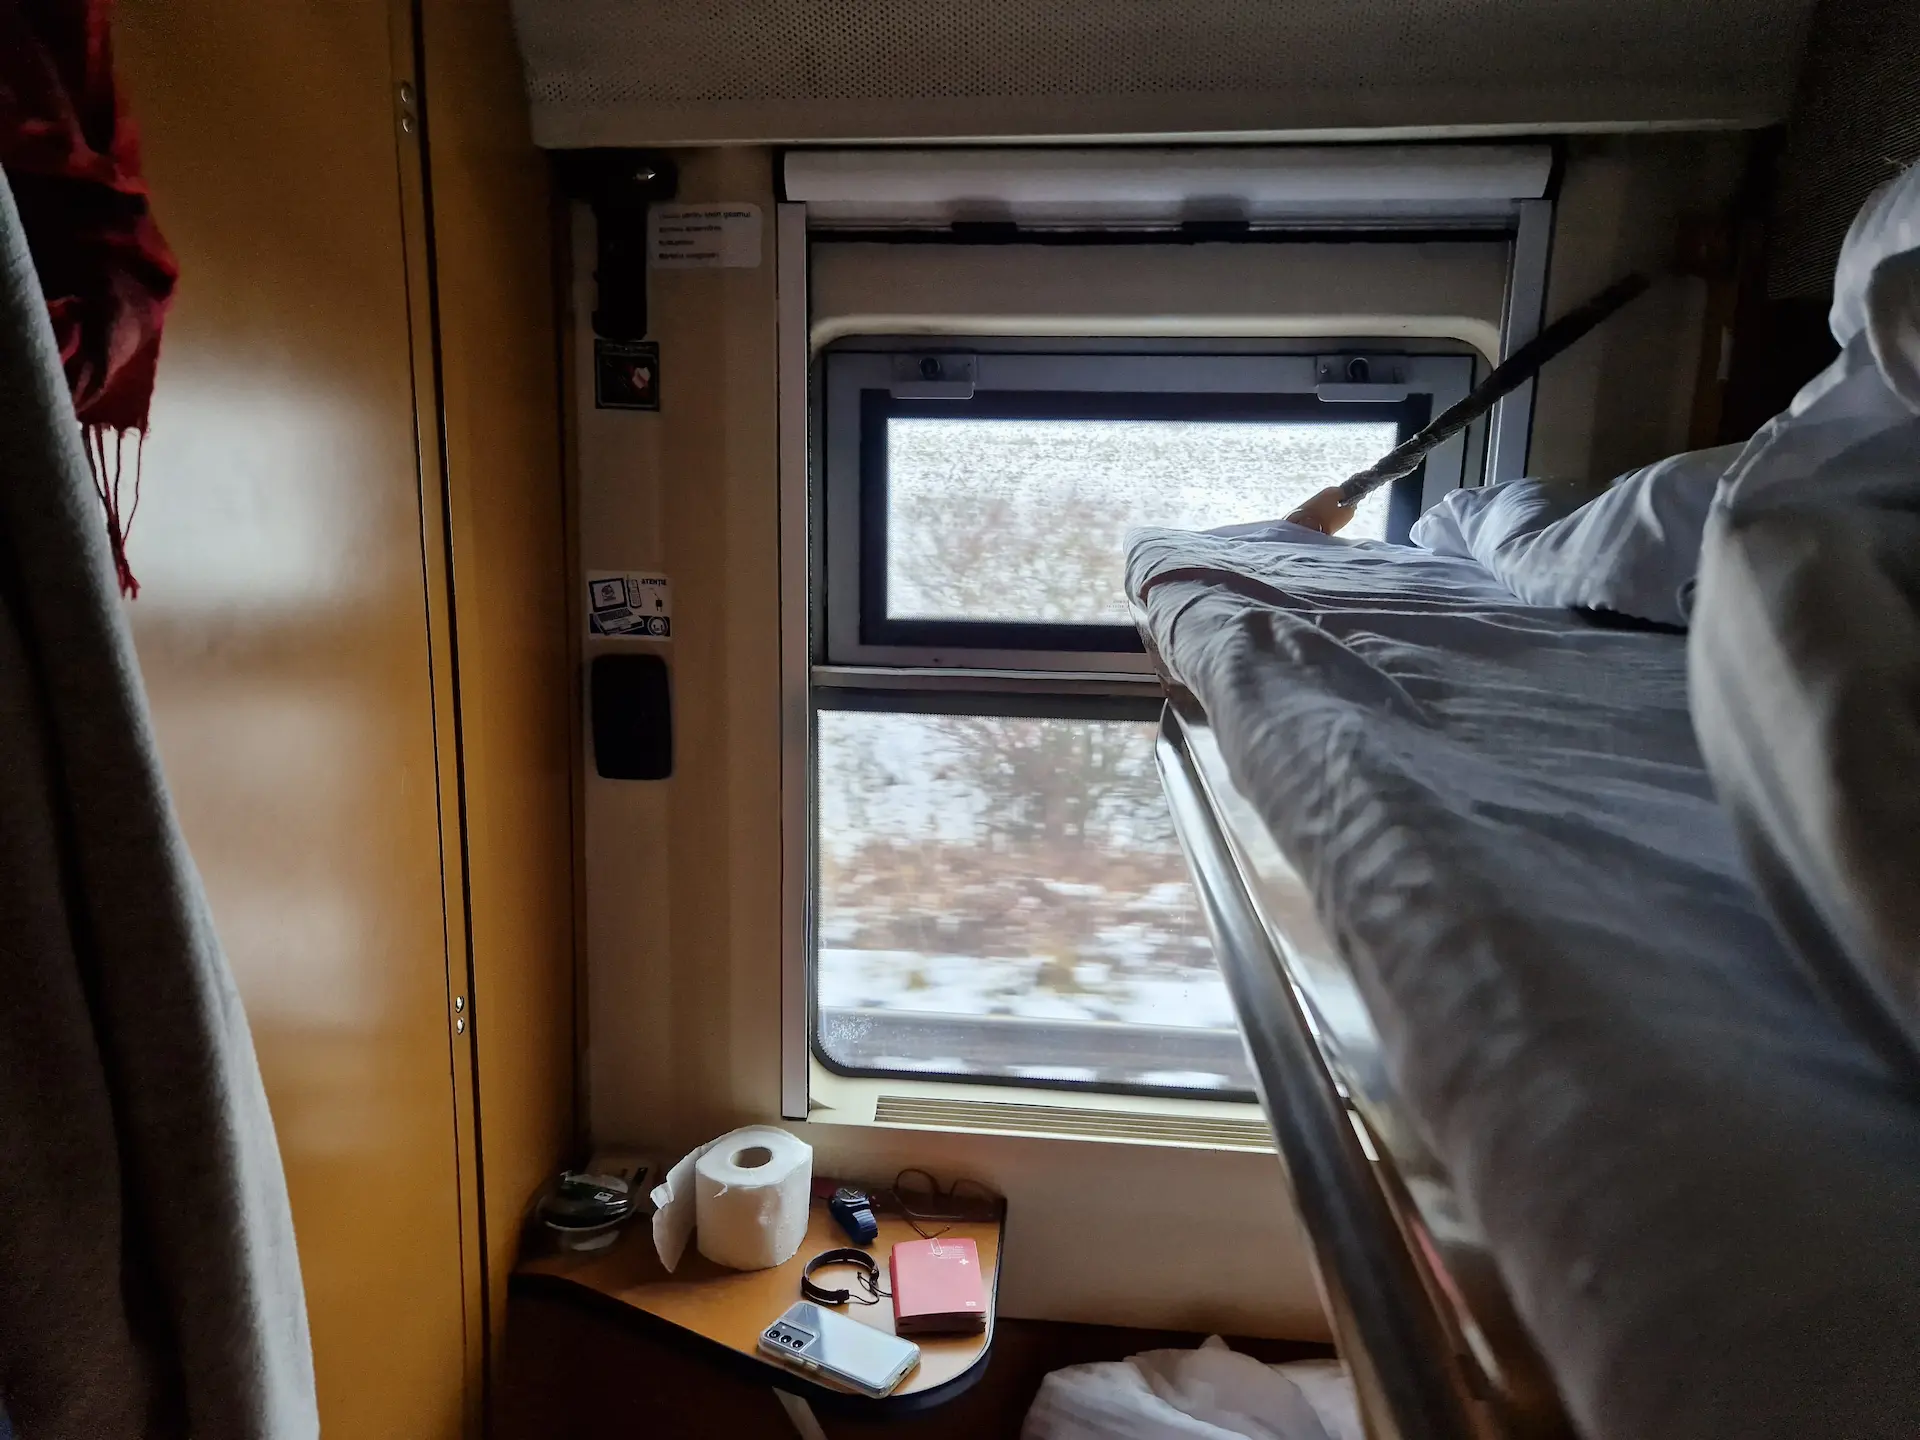 Cabine de train : deux couchettes sur la droite, la salle de bain sur la gauche, la fenêtre en face